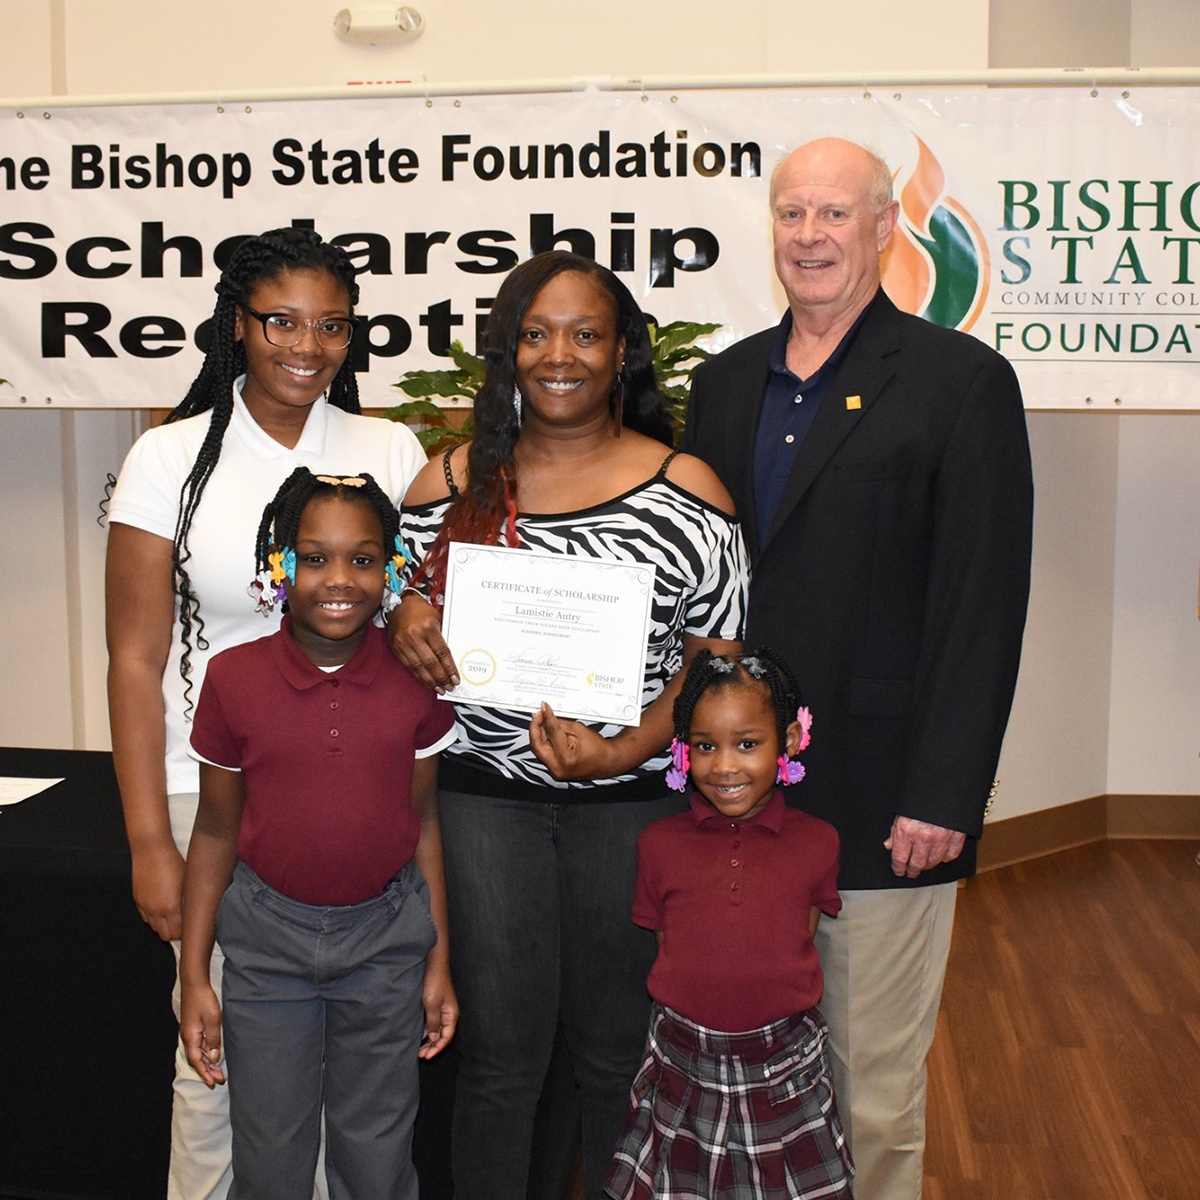 Bishop State Community College Campus - Scholarship Blurb